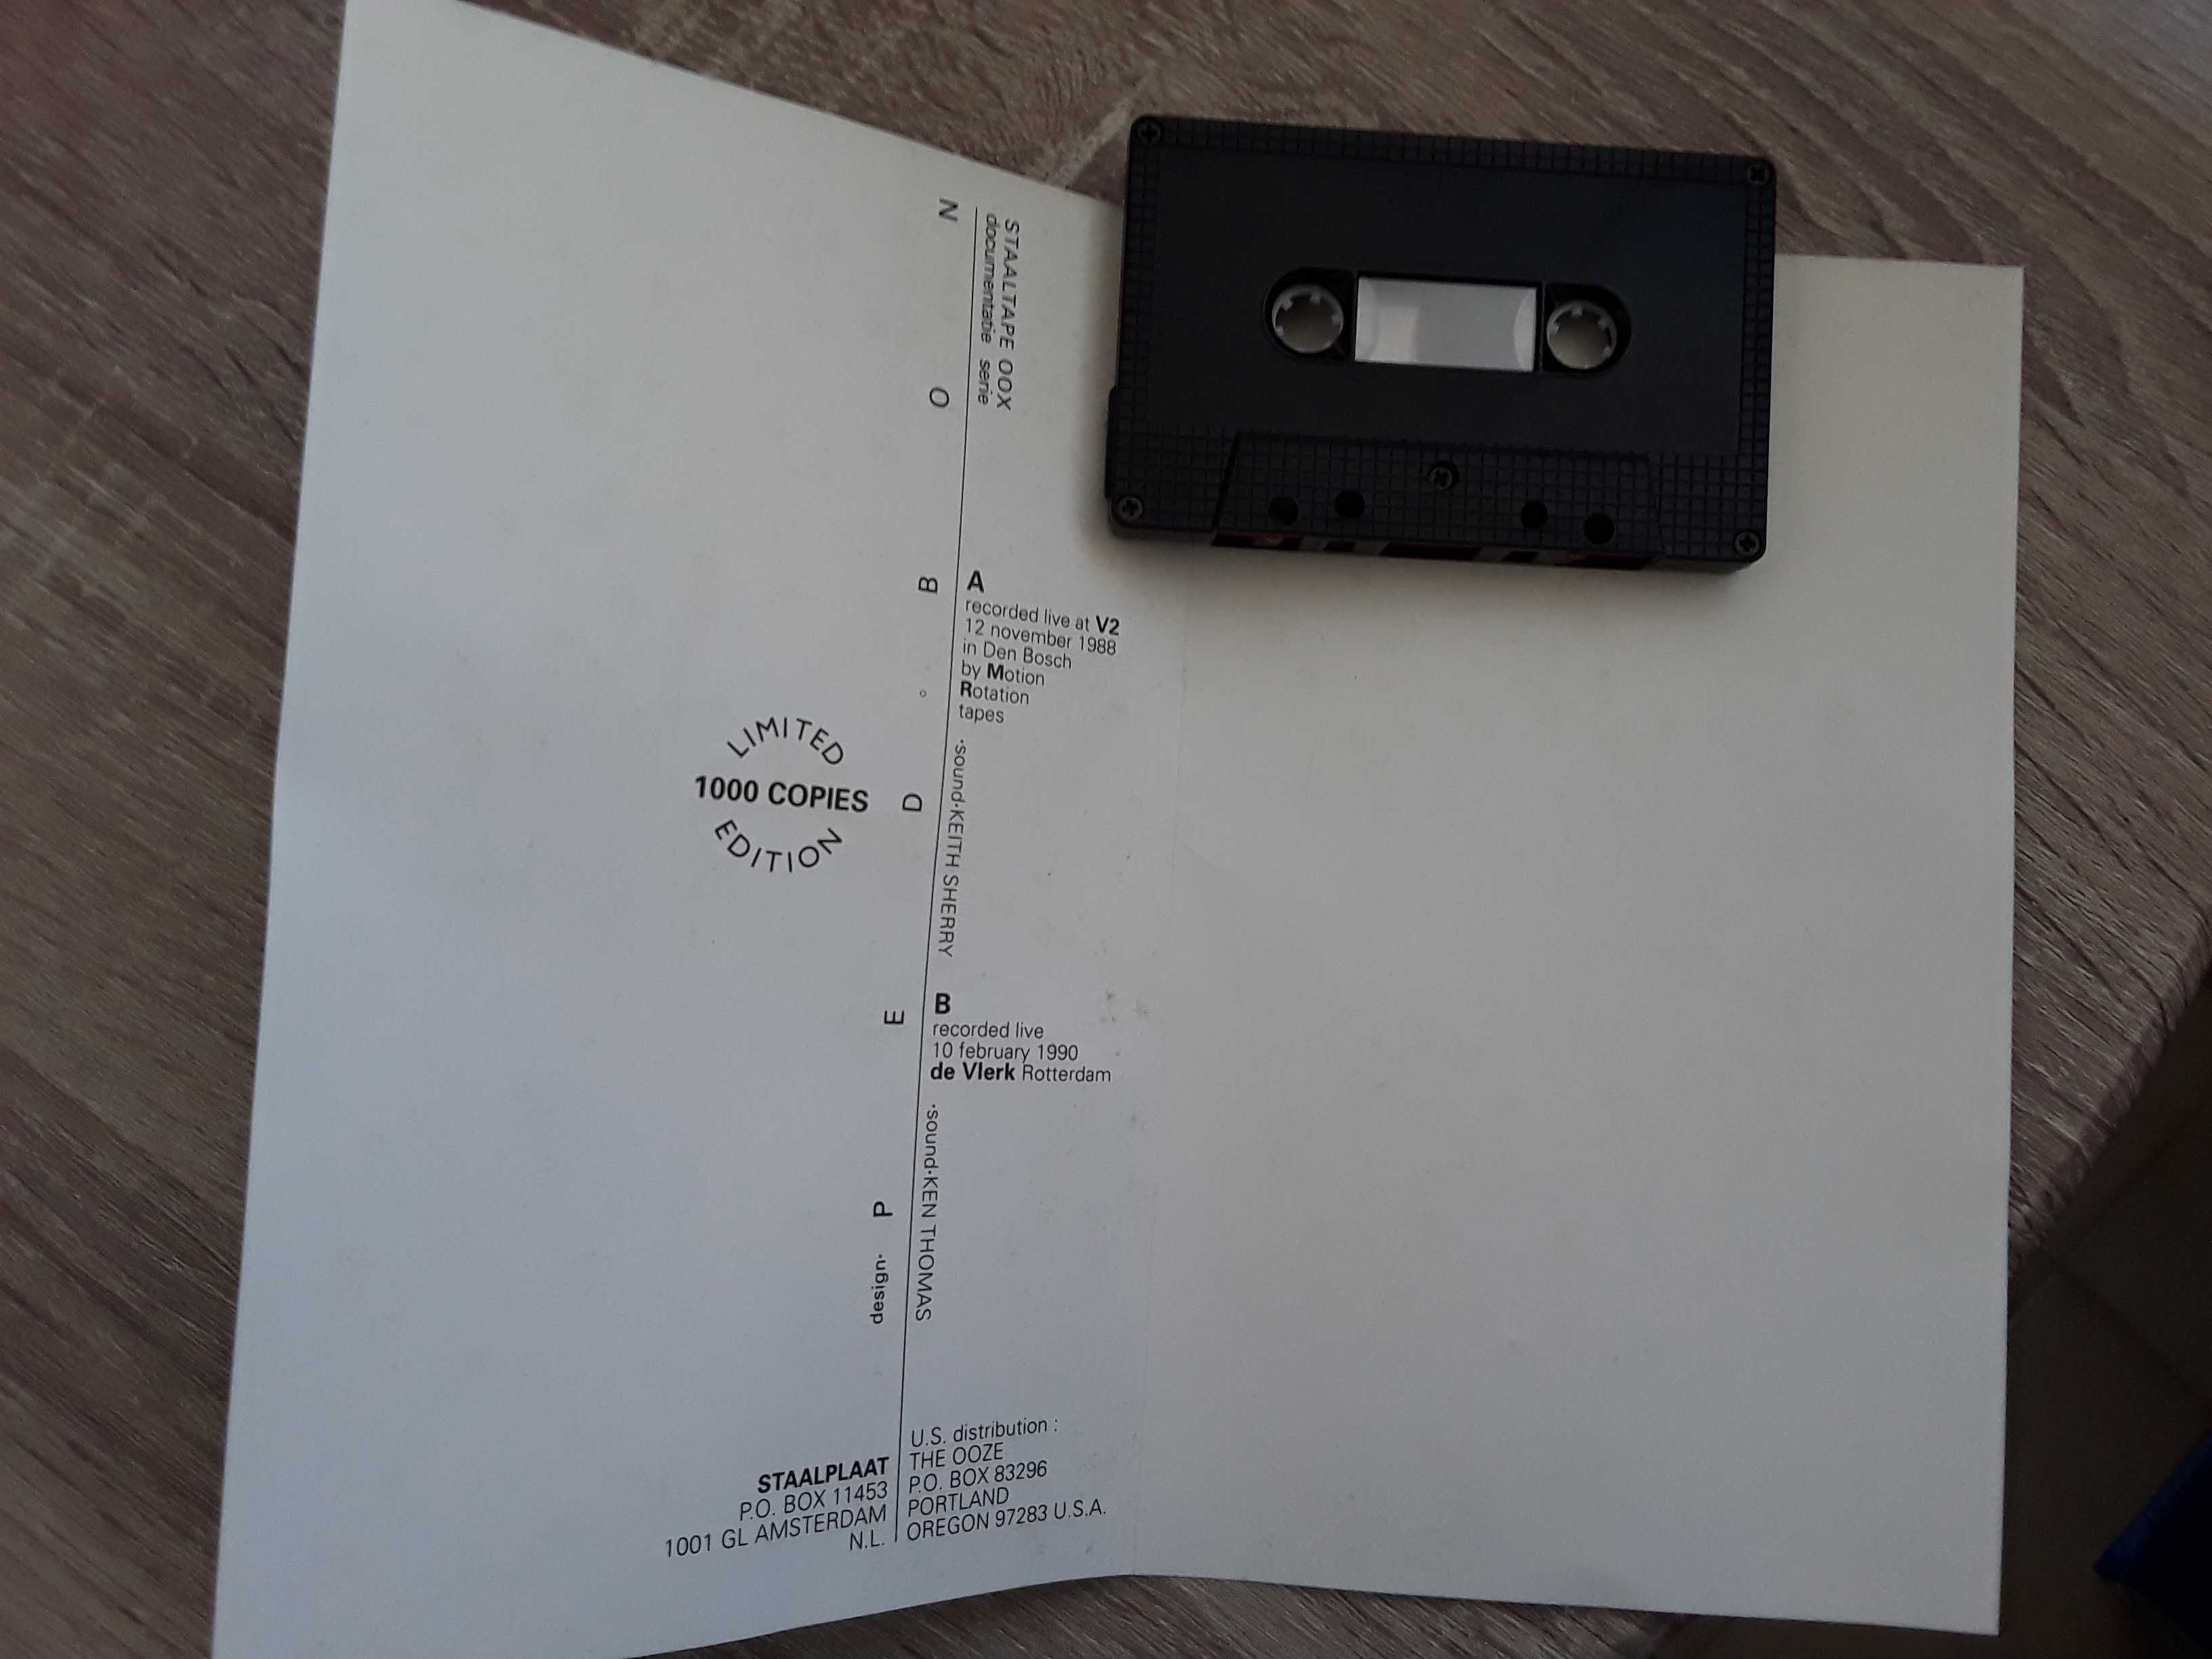 Cassete audio (rara) Von Magnet